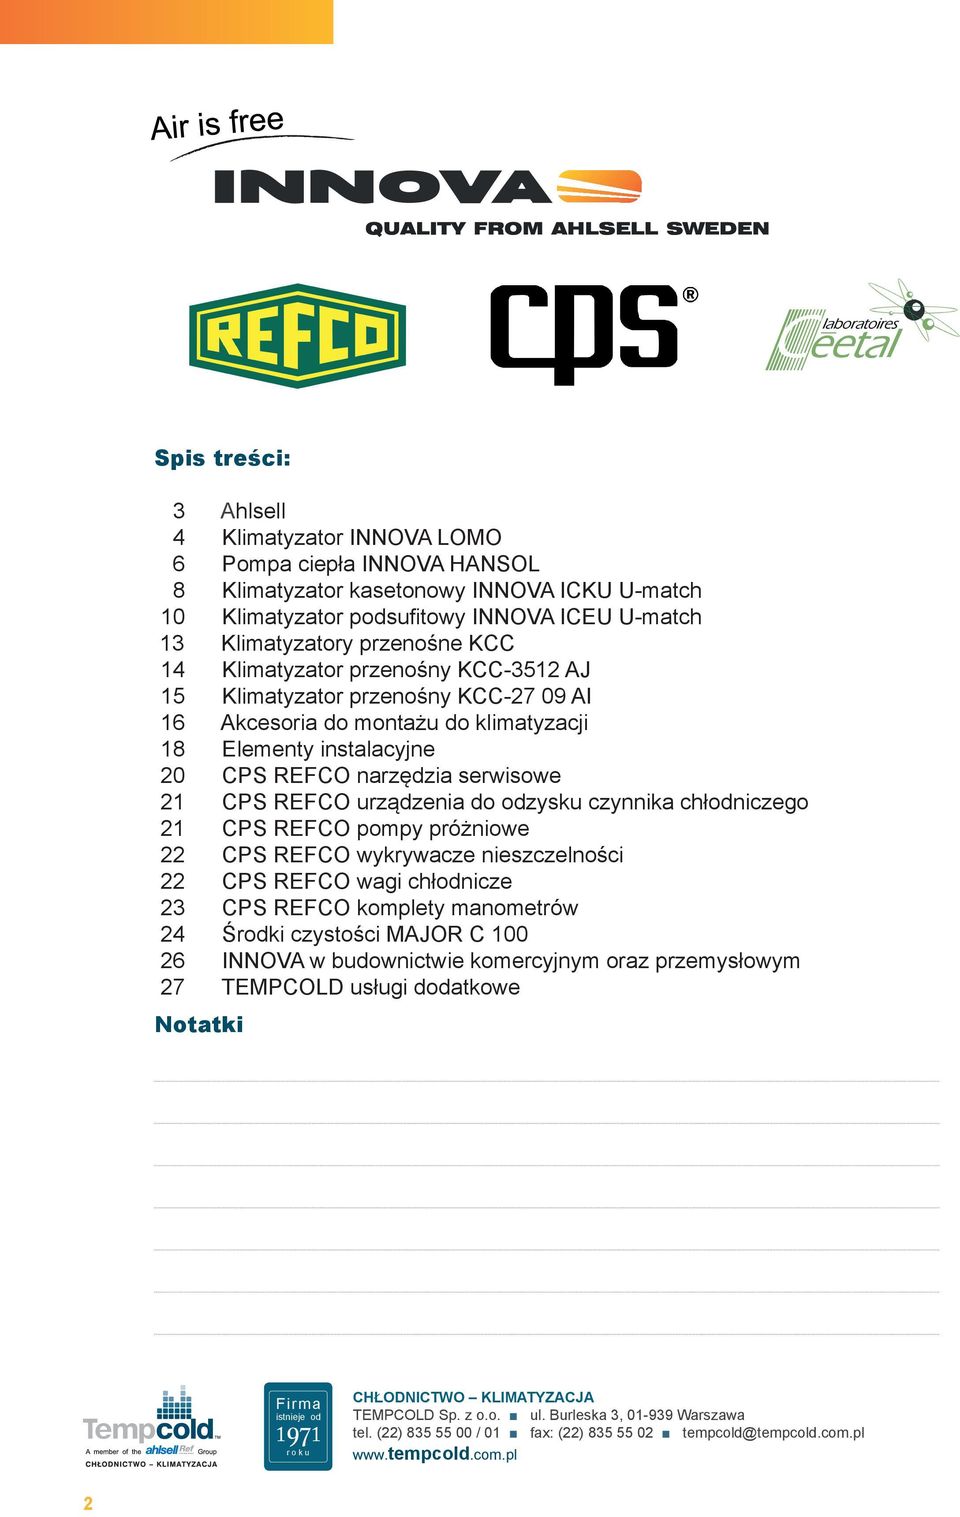 20 CPS REFCO narzędzia serwisowe 21 CPS REFCO urządzenia do odzysku czynnika chłodniczego 21 CPS REFCO pompy próżniowe 22 CPS REFCO wykrywacze nieszczelności 22 CPS REFCO